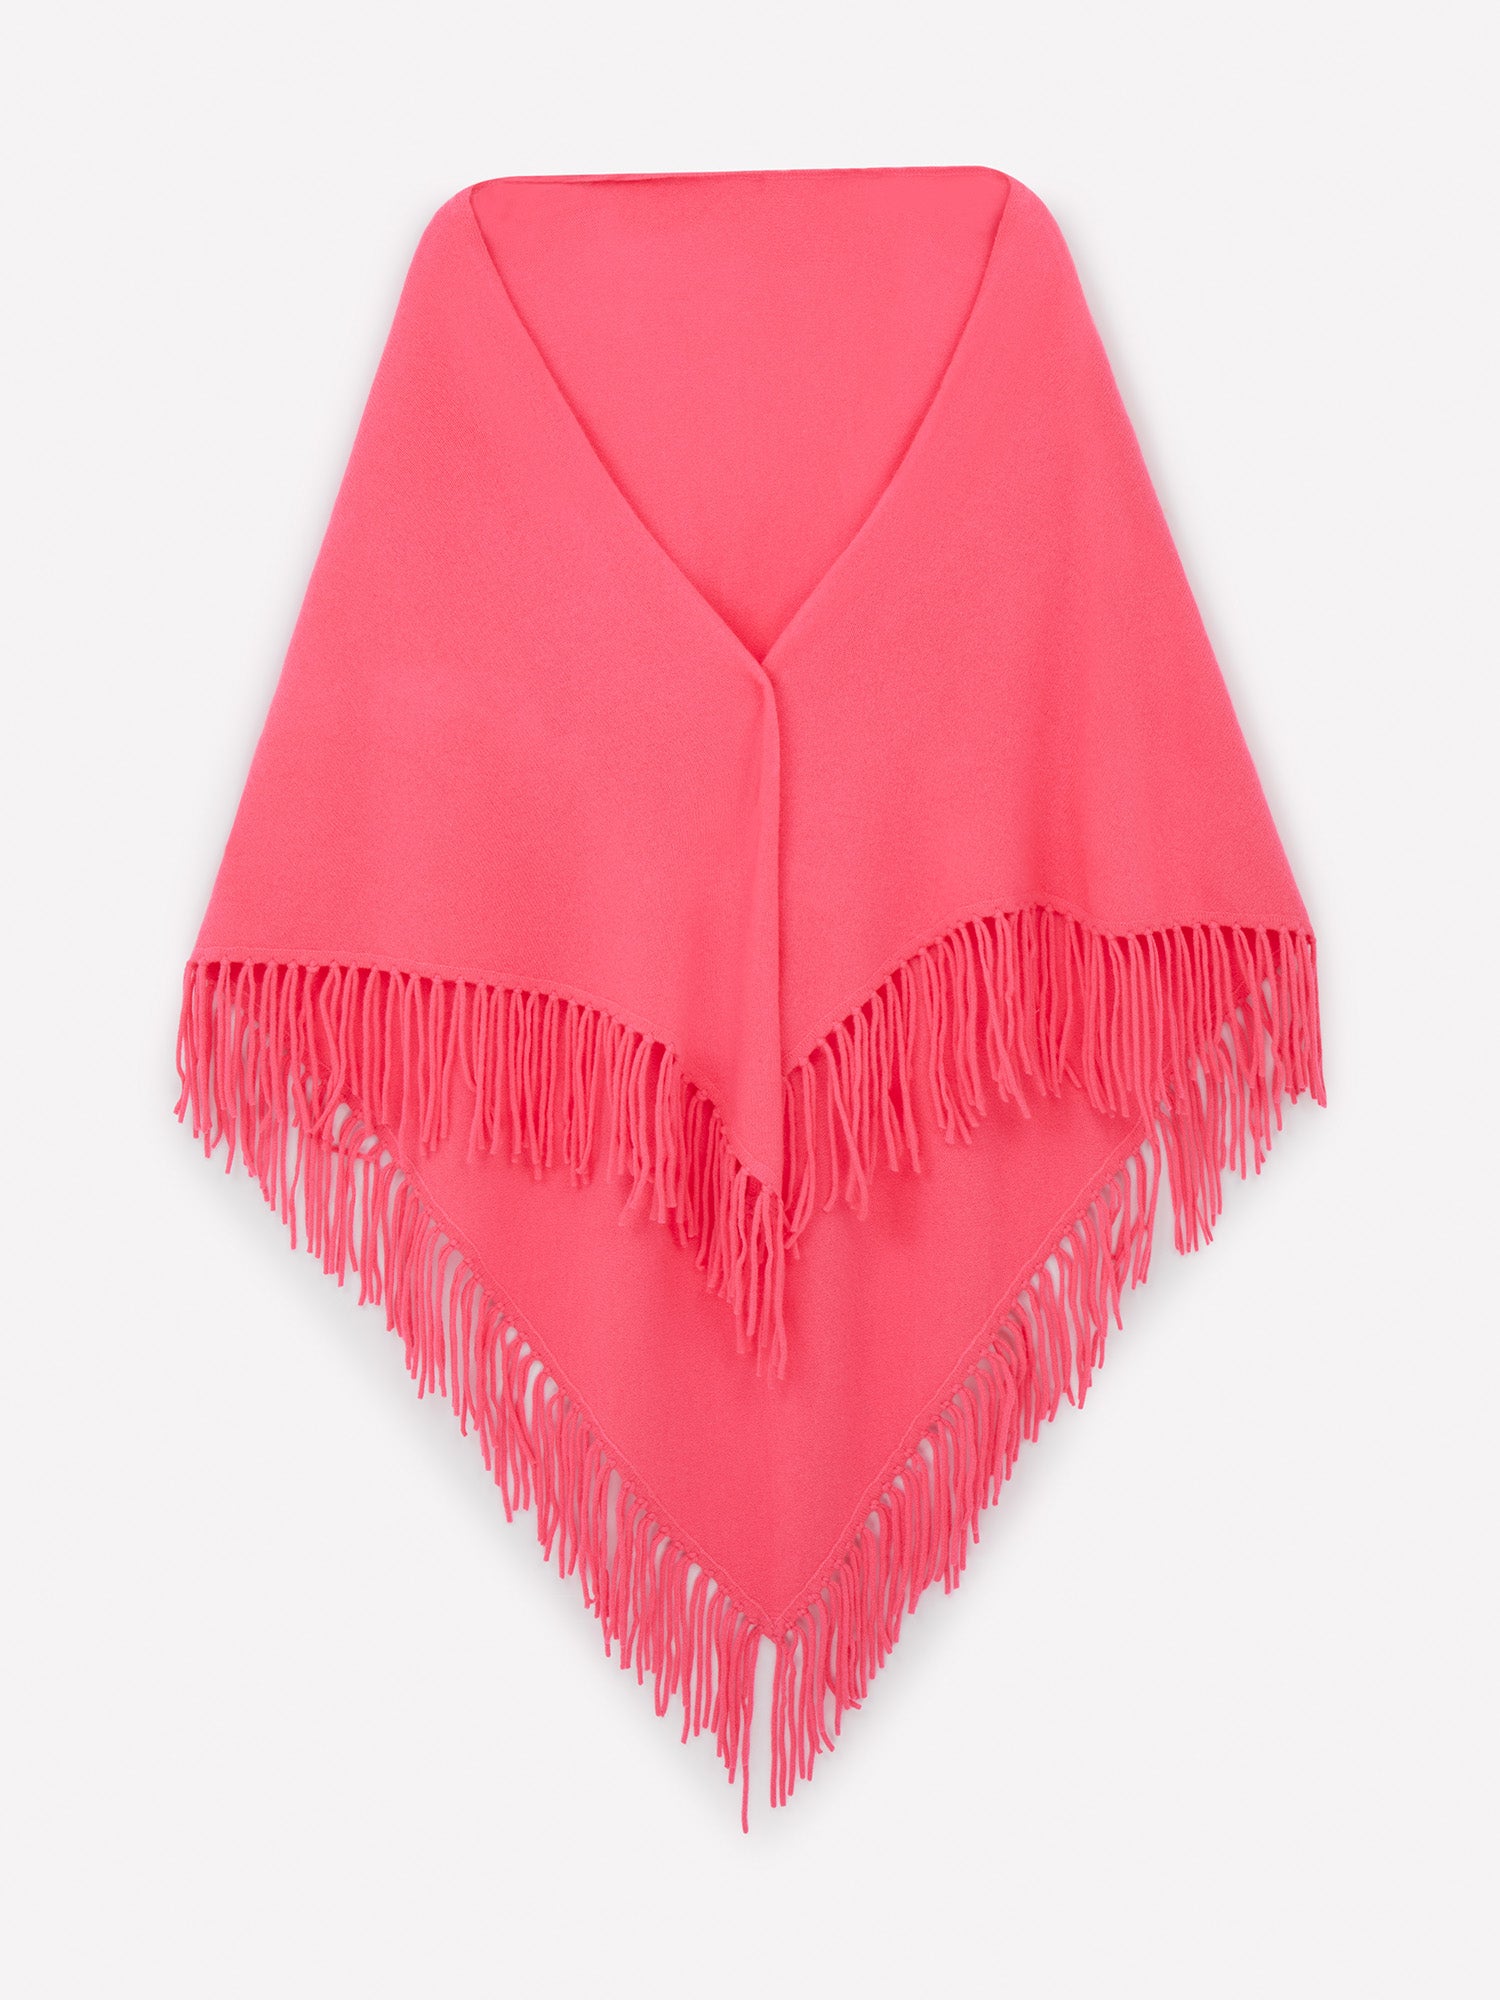 Neon pink luxury tassle scarf